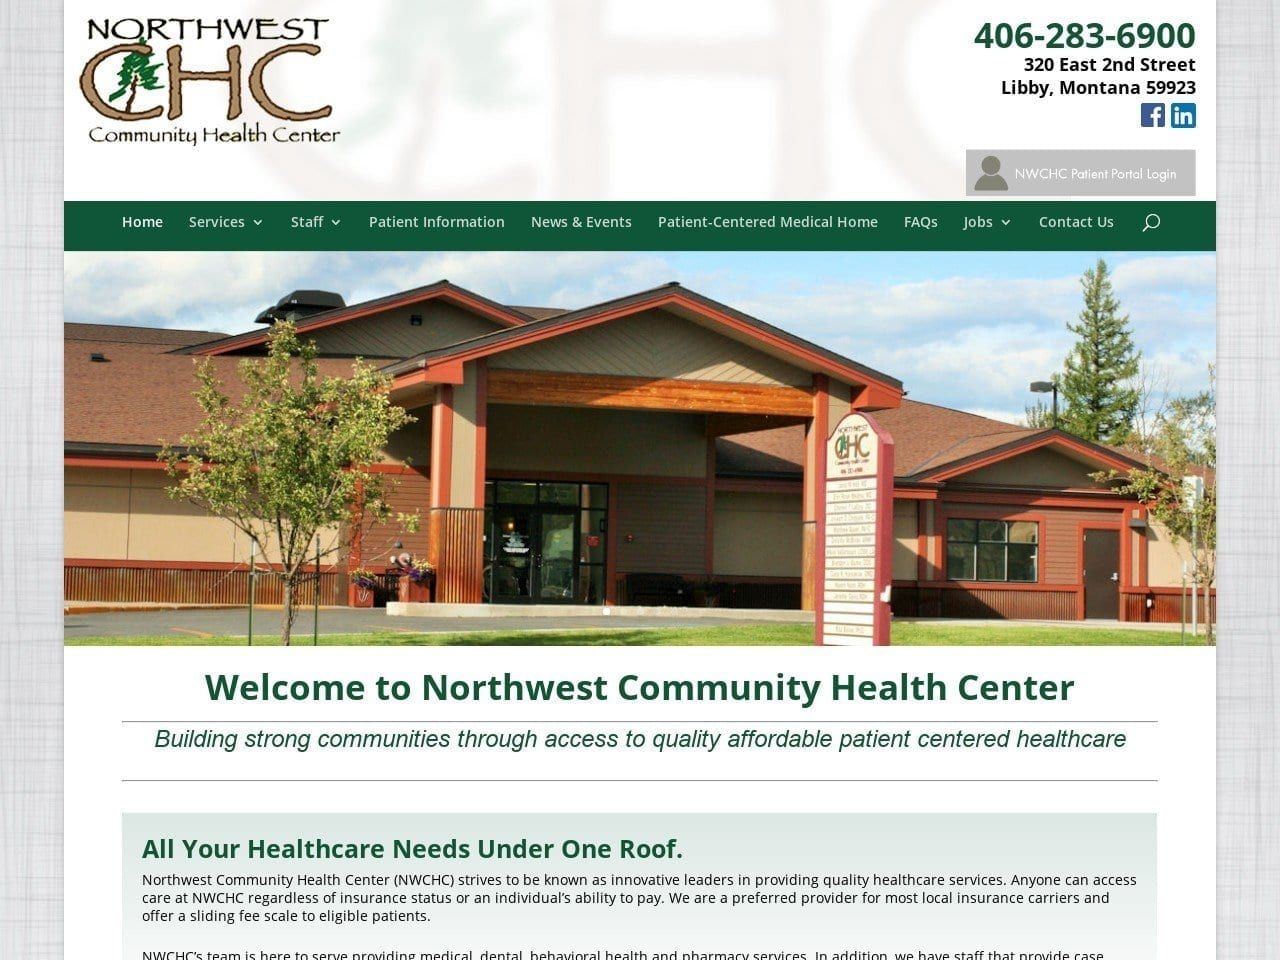 Northwest Community Health Center Website Screenshot from northwestchc.org